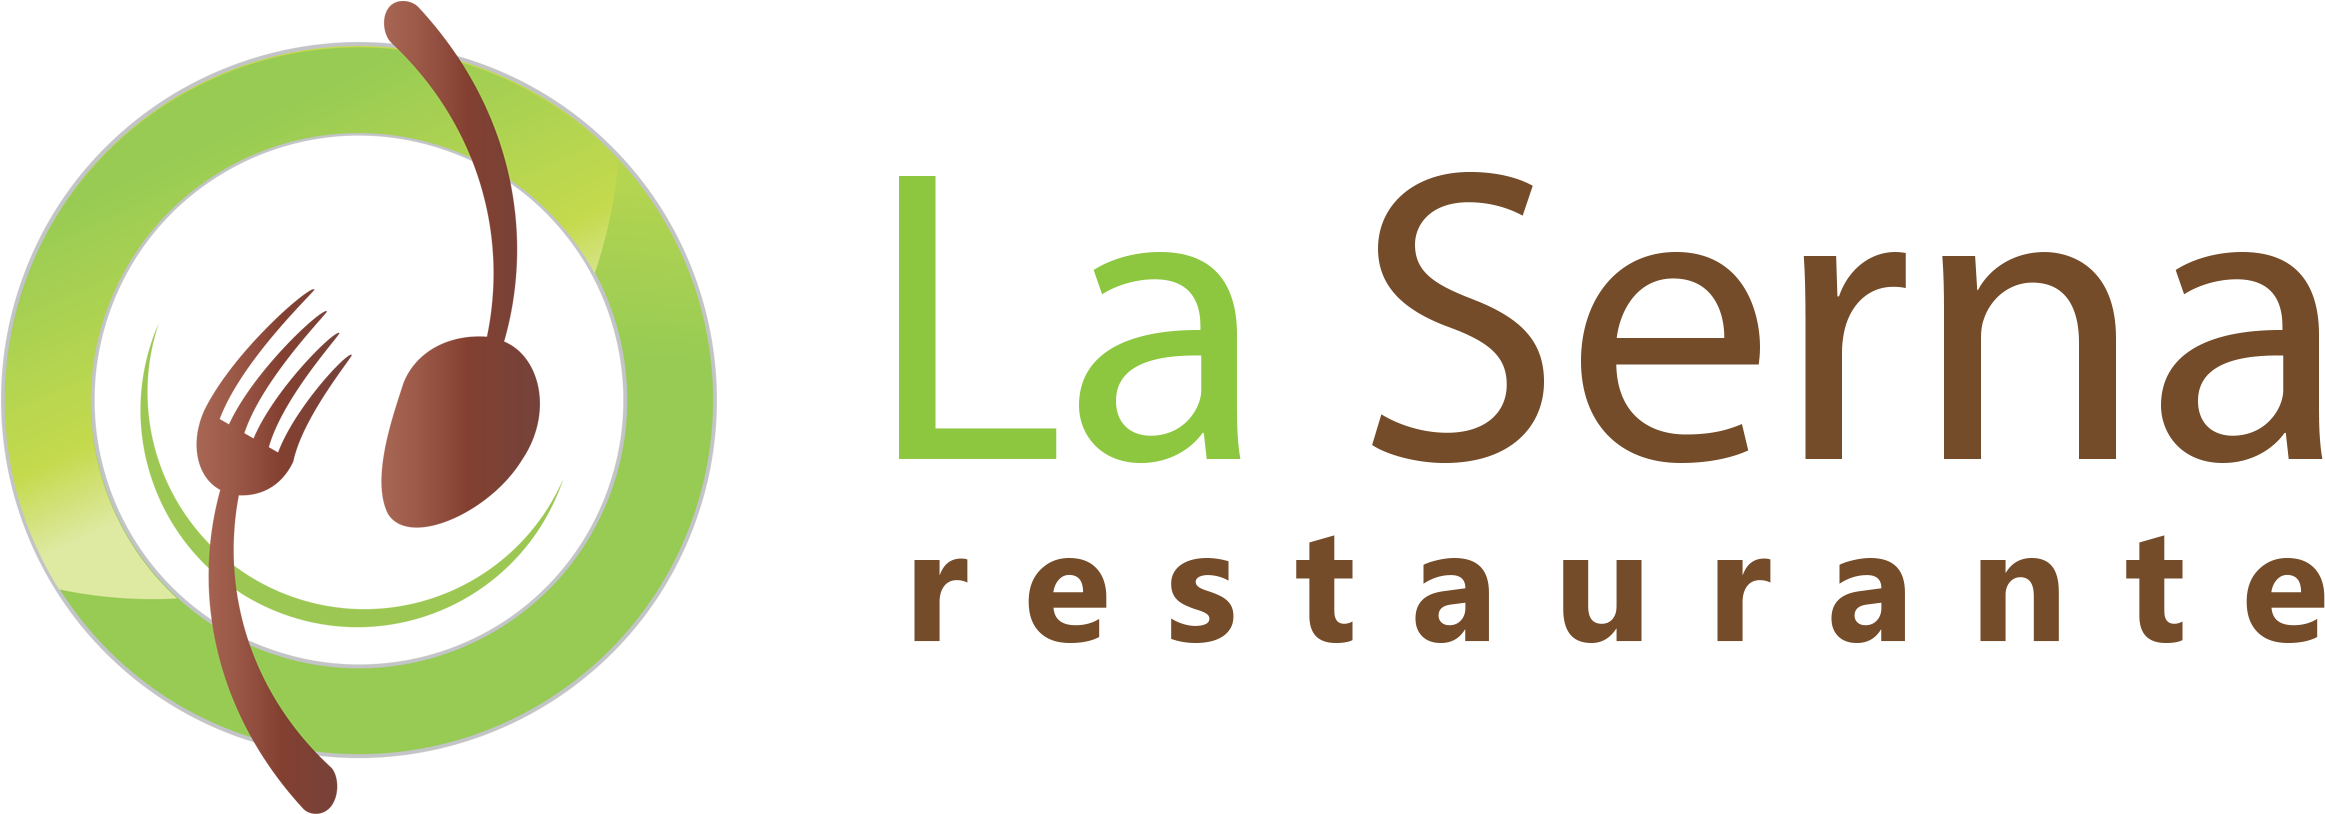 Restaurante La Serna - Logos De Restaurantes Png Clipart (2419x877), Png Download